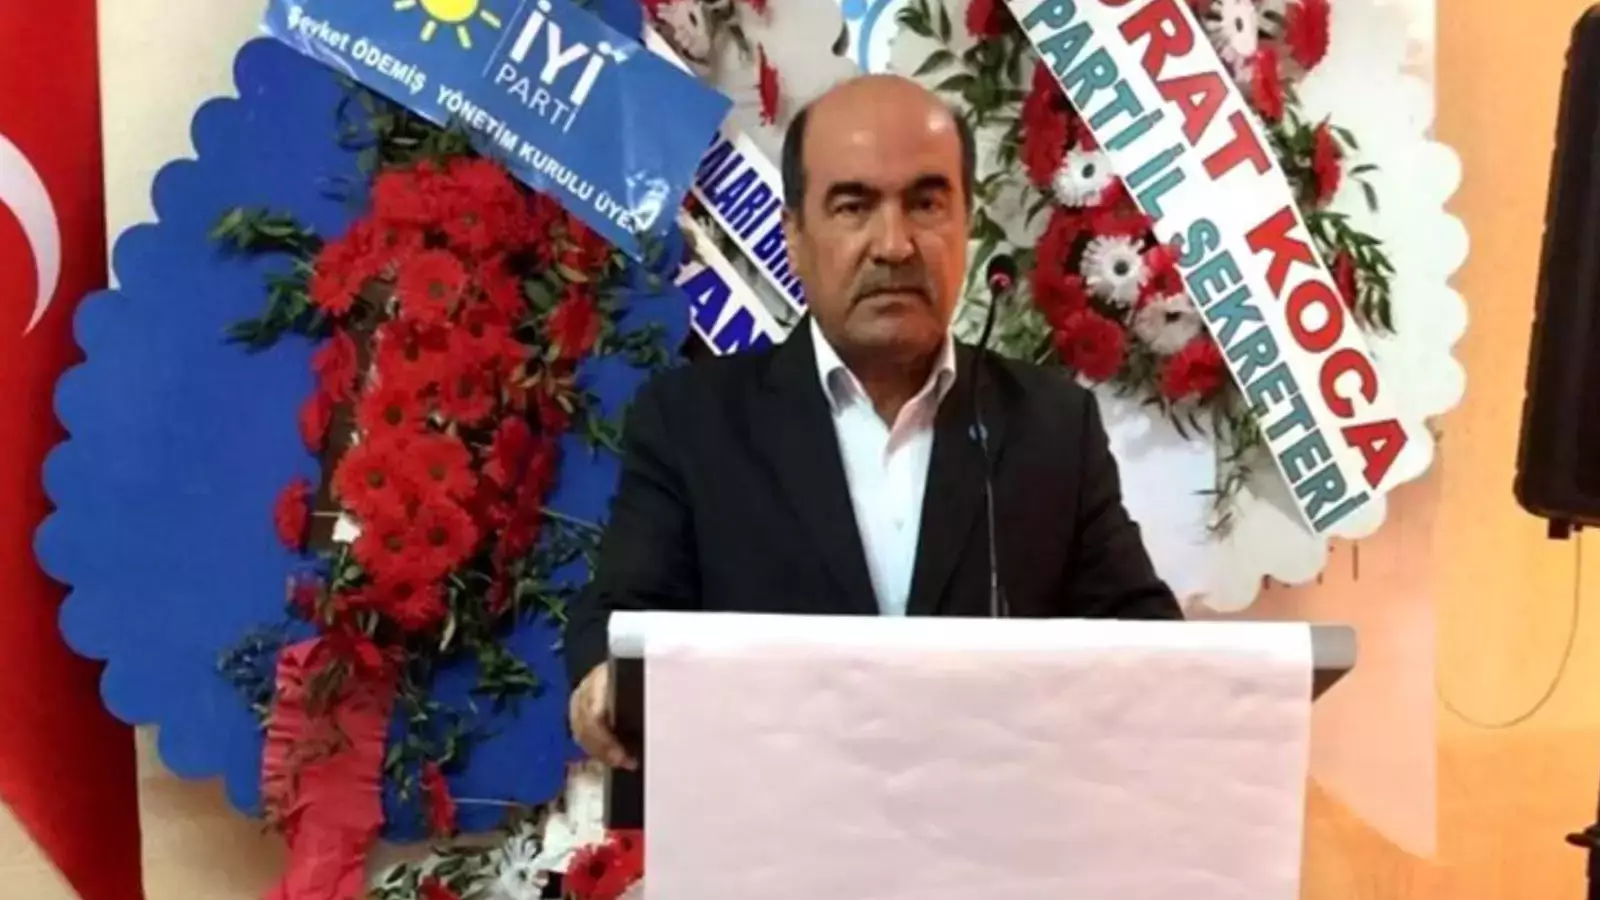 İYİ Parti Adıyaman Kurucular Kurulu üyesi olan Mithat Solgun, partisinden istifa ettiğini açıkladı.